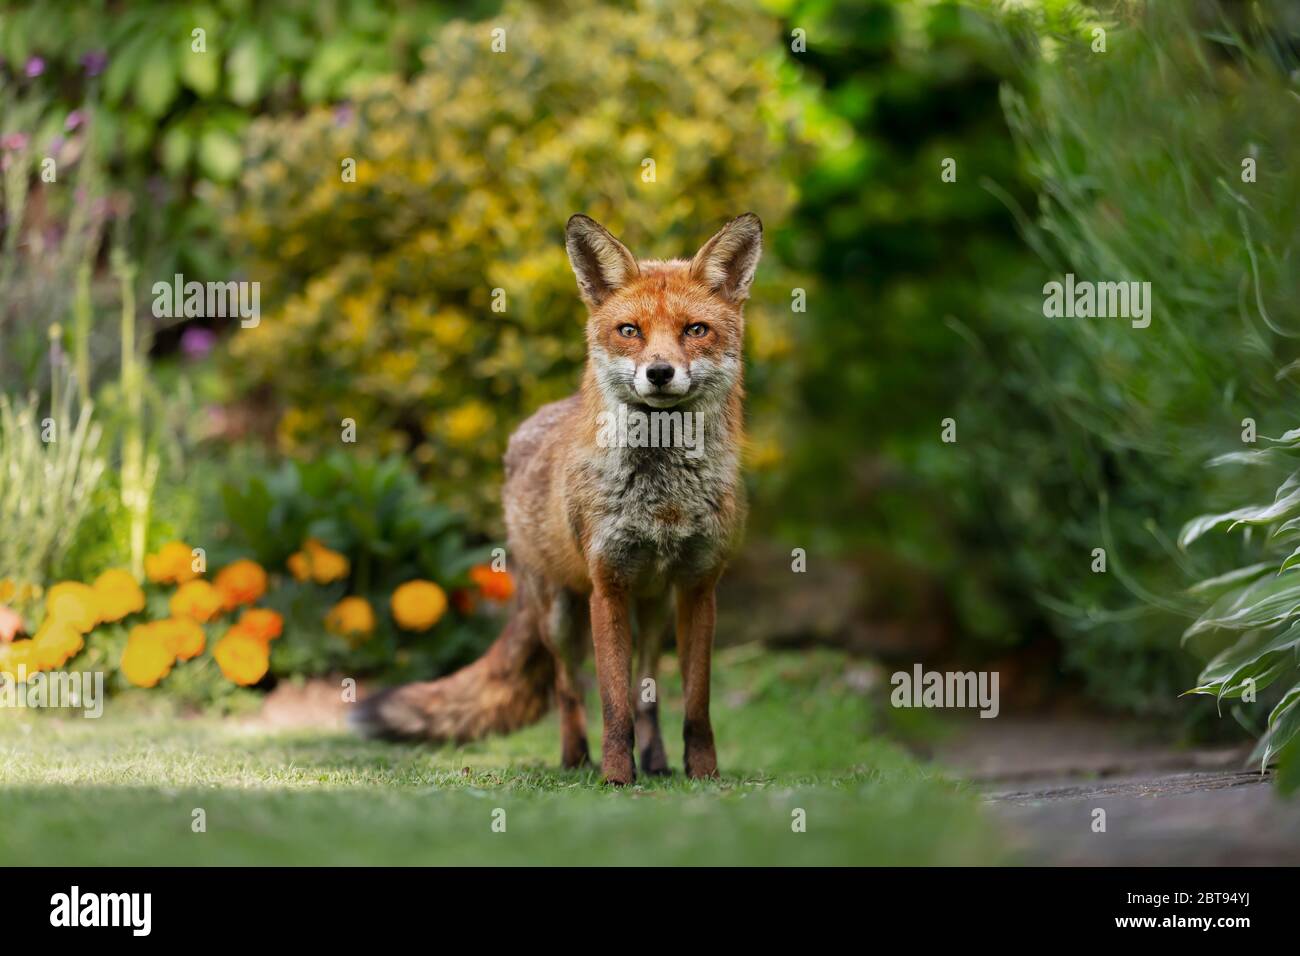 Gros plan d'un renard roux (Vulpes vulpes) dans un jardin urbain, Londres. Banque D'Images